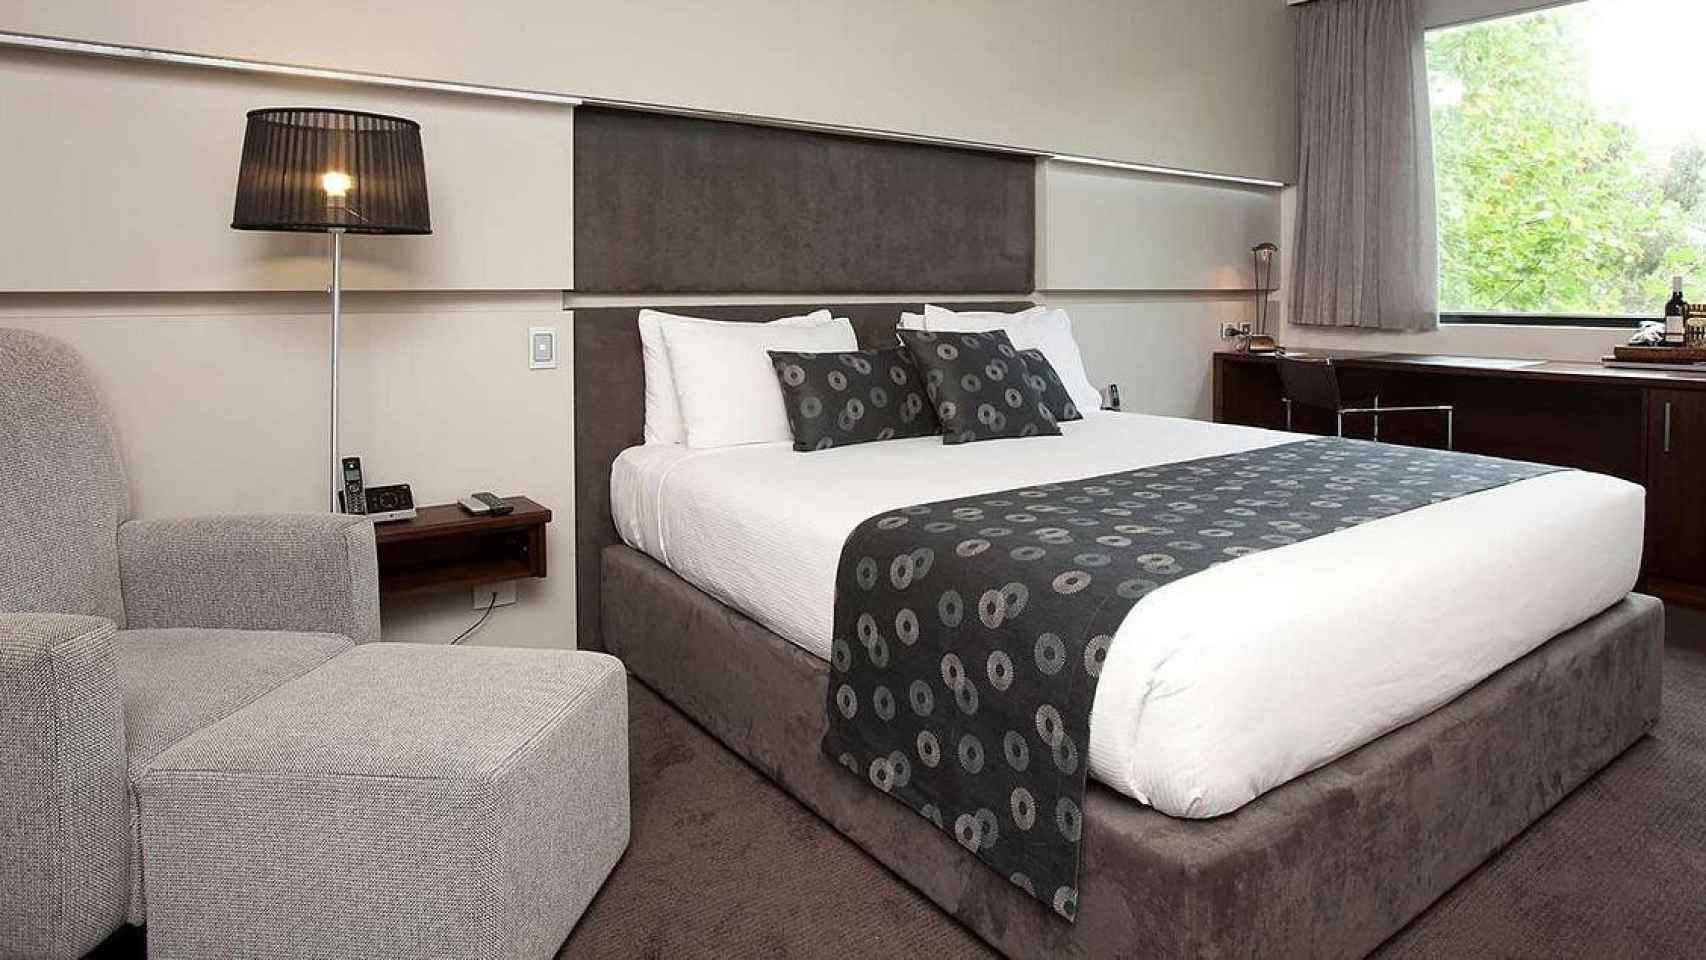 Hotel en el que se encuentra Djokovic en Melbourne/TRIPADVISOR